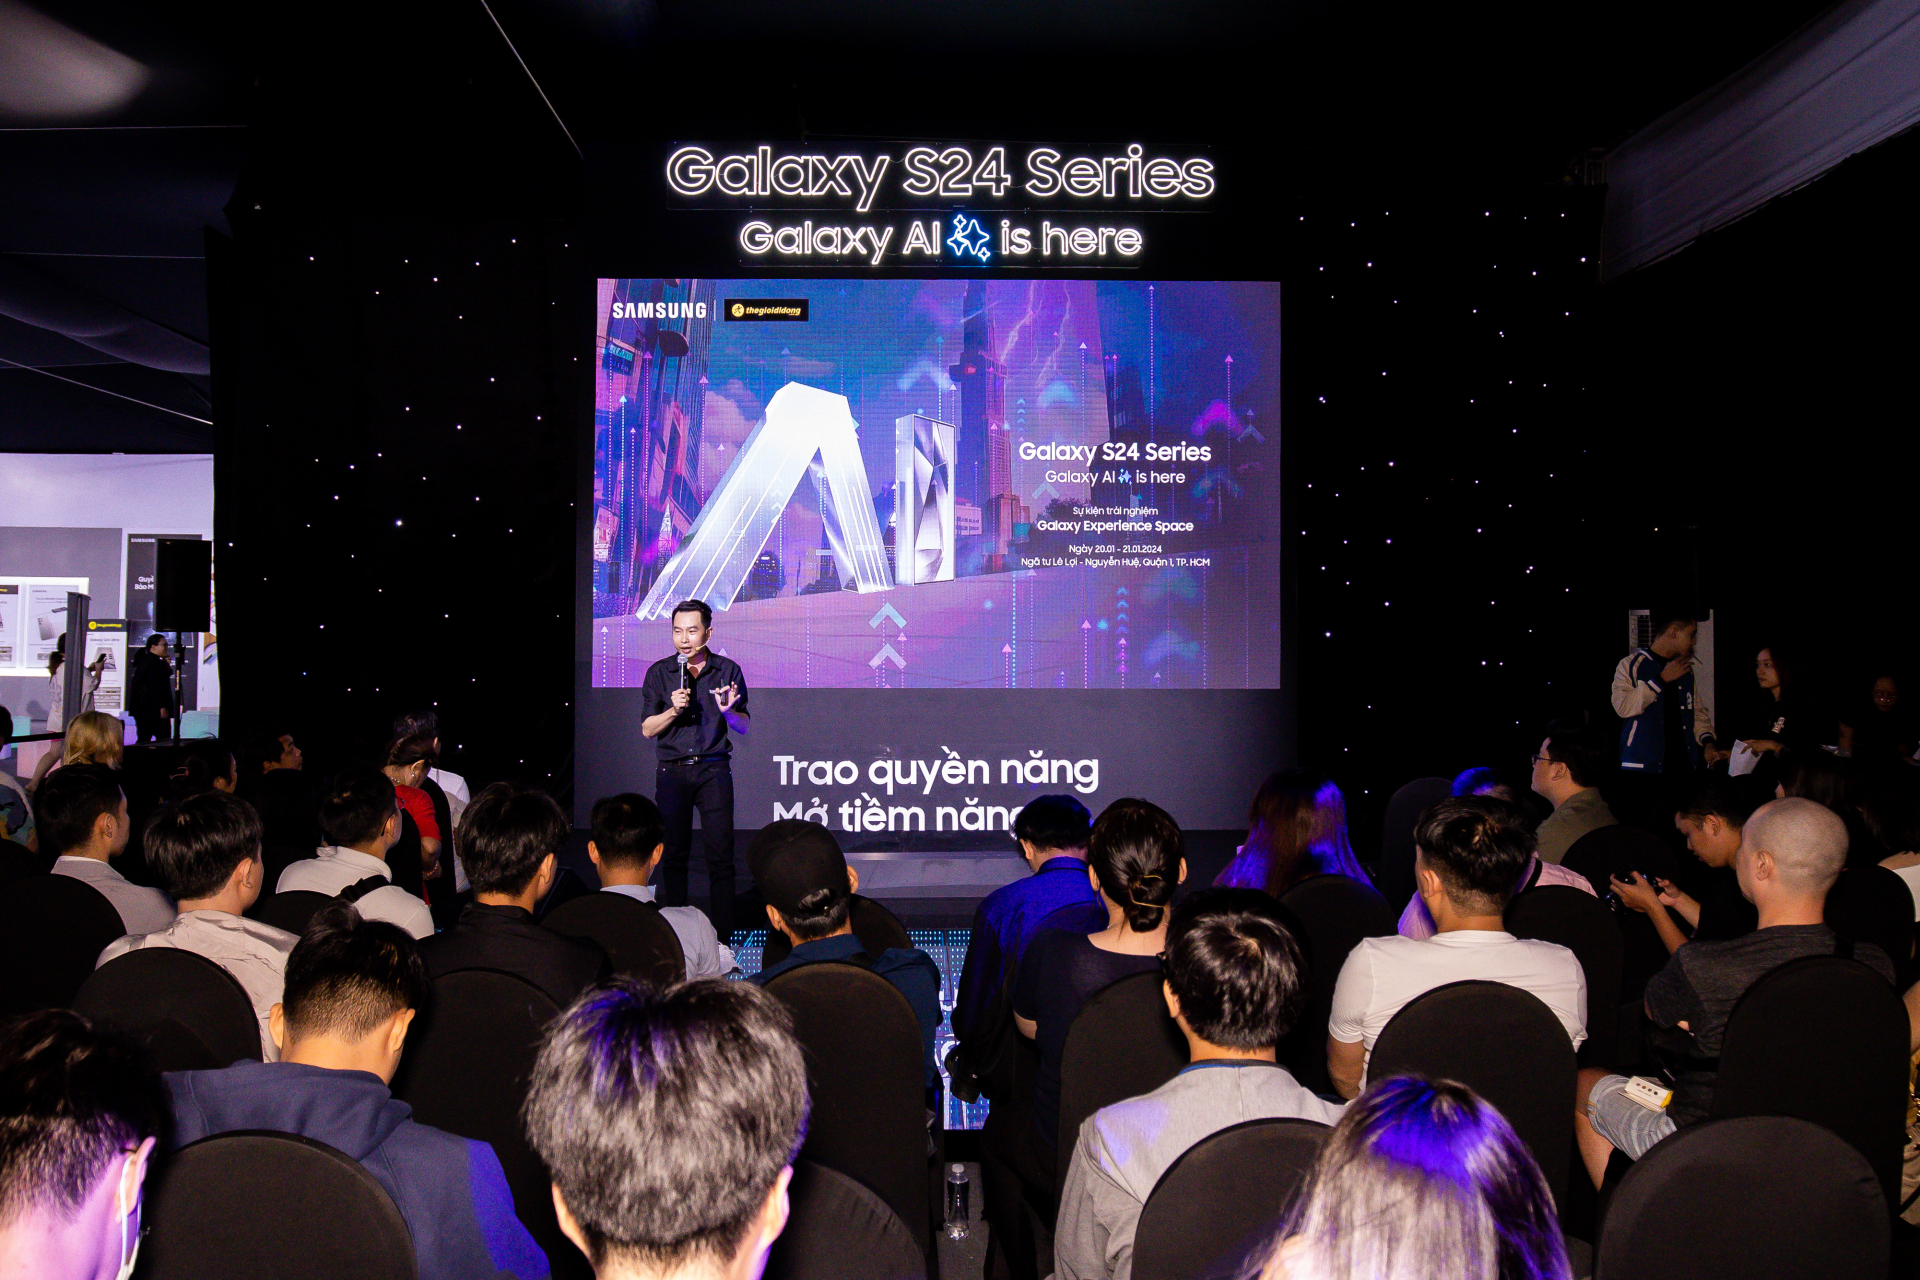 Đặc quyền dành cho Samfan từ Samsung: cùng chuyên gia vén màn kỷ nguyên mới với 'Galaxy AI' - ảnh 1